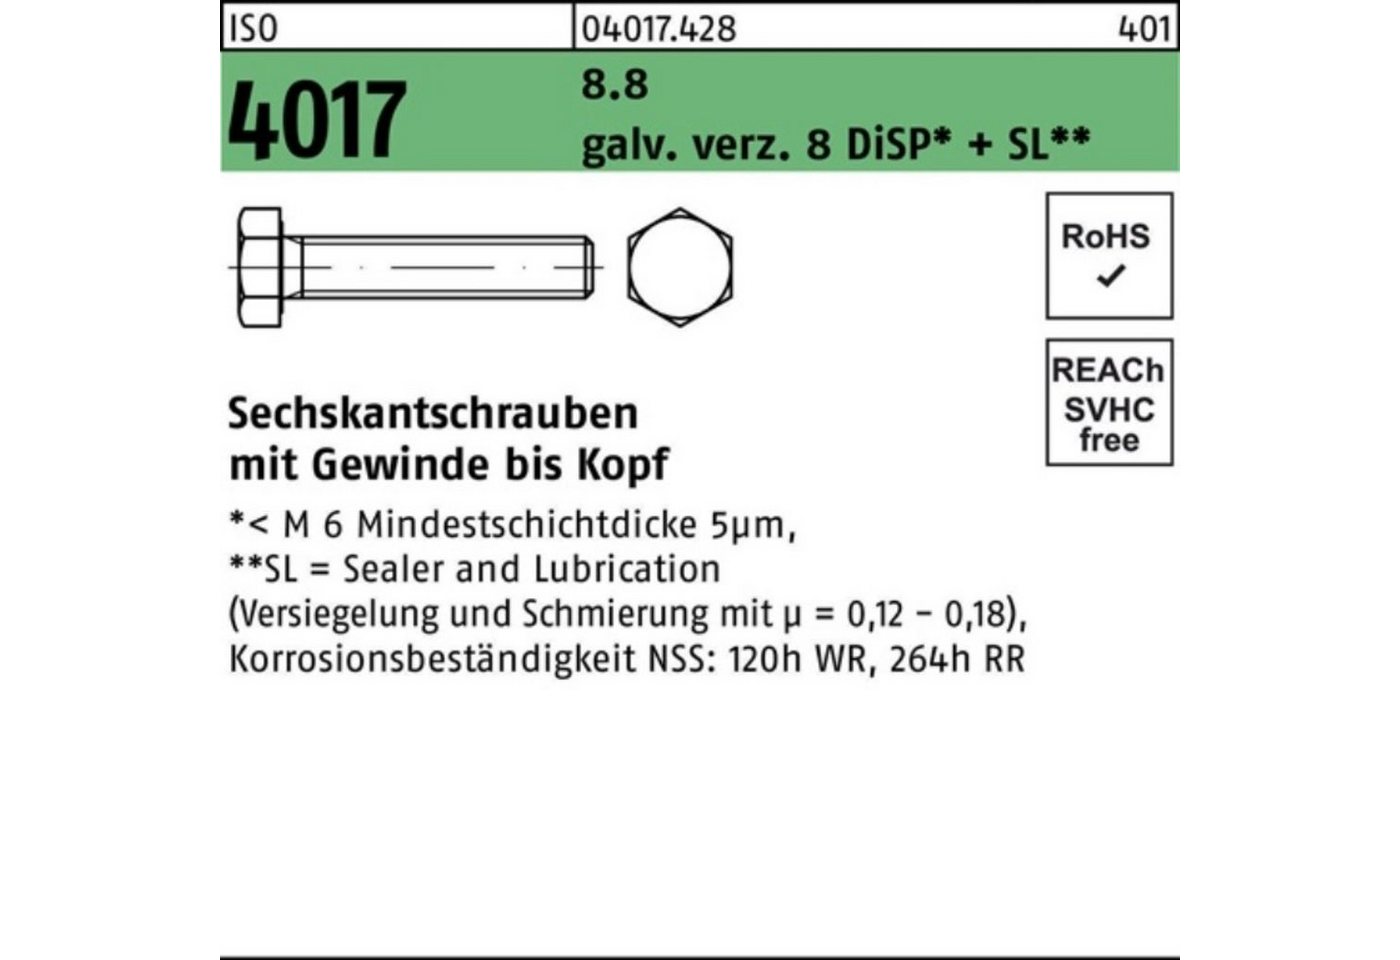 Bufab Sechskantschraube 100er Pack Sechskantschraube ISO 4017 VG M20x 80 8.8 galv.verz. 8 DiSP von Bufab